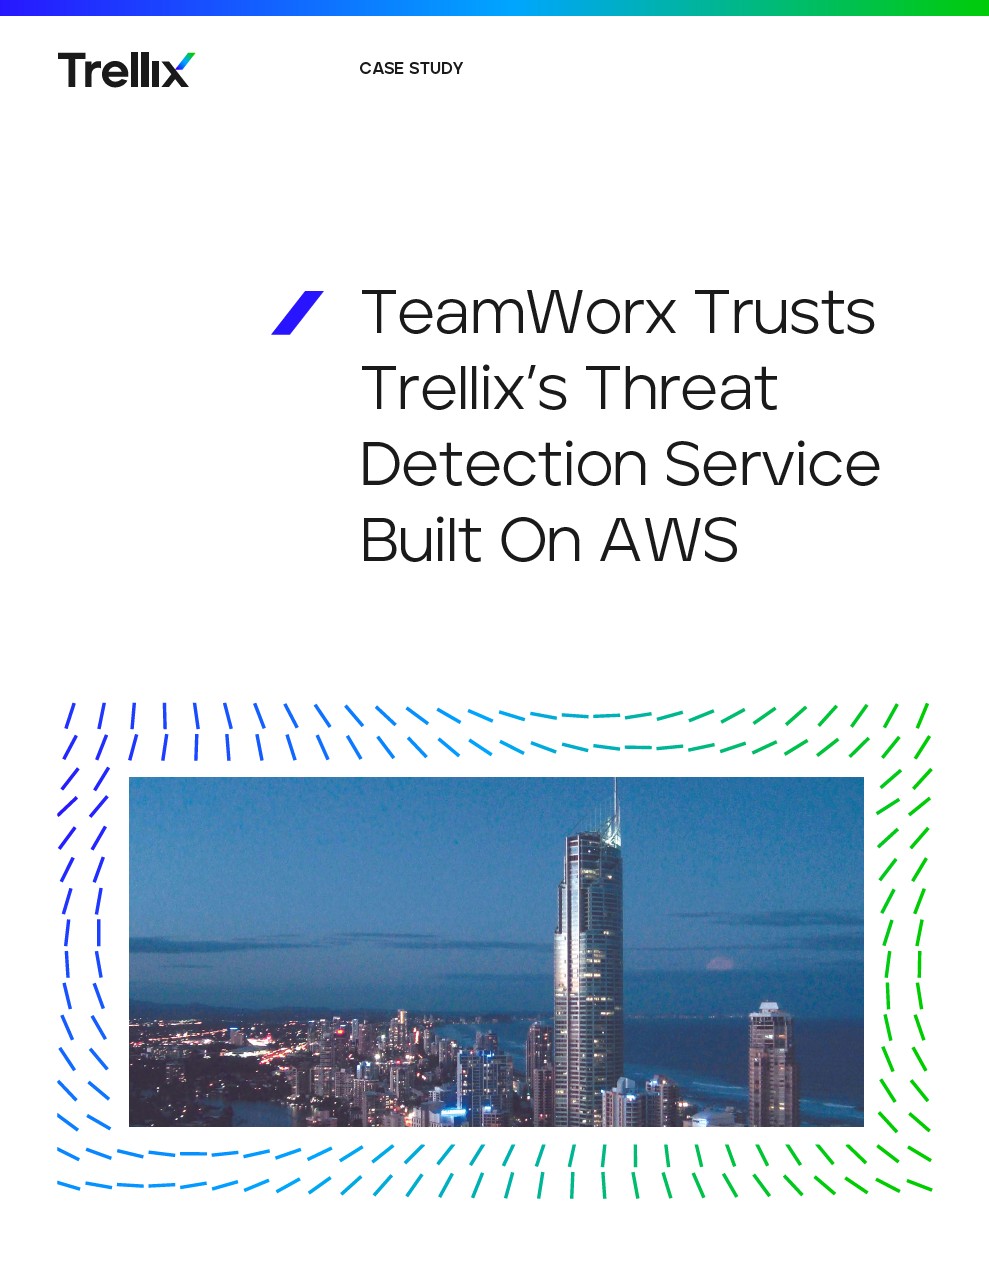 TeamWorx Trusts Trellix's Threat Detection Service Built On AWS Thumbnail